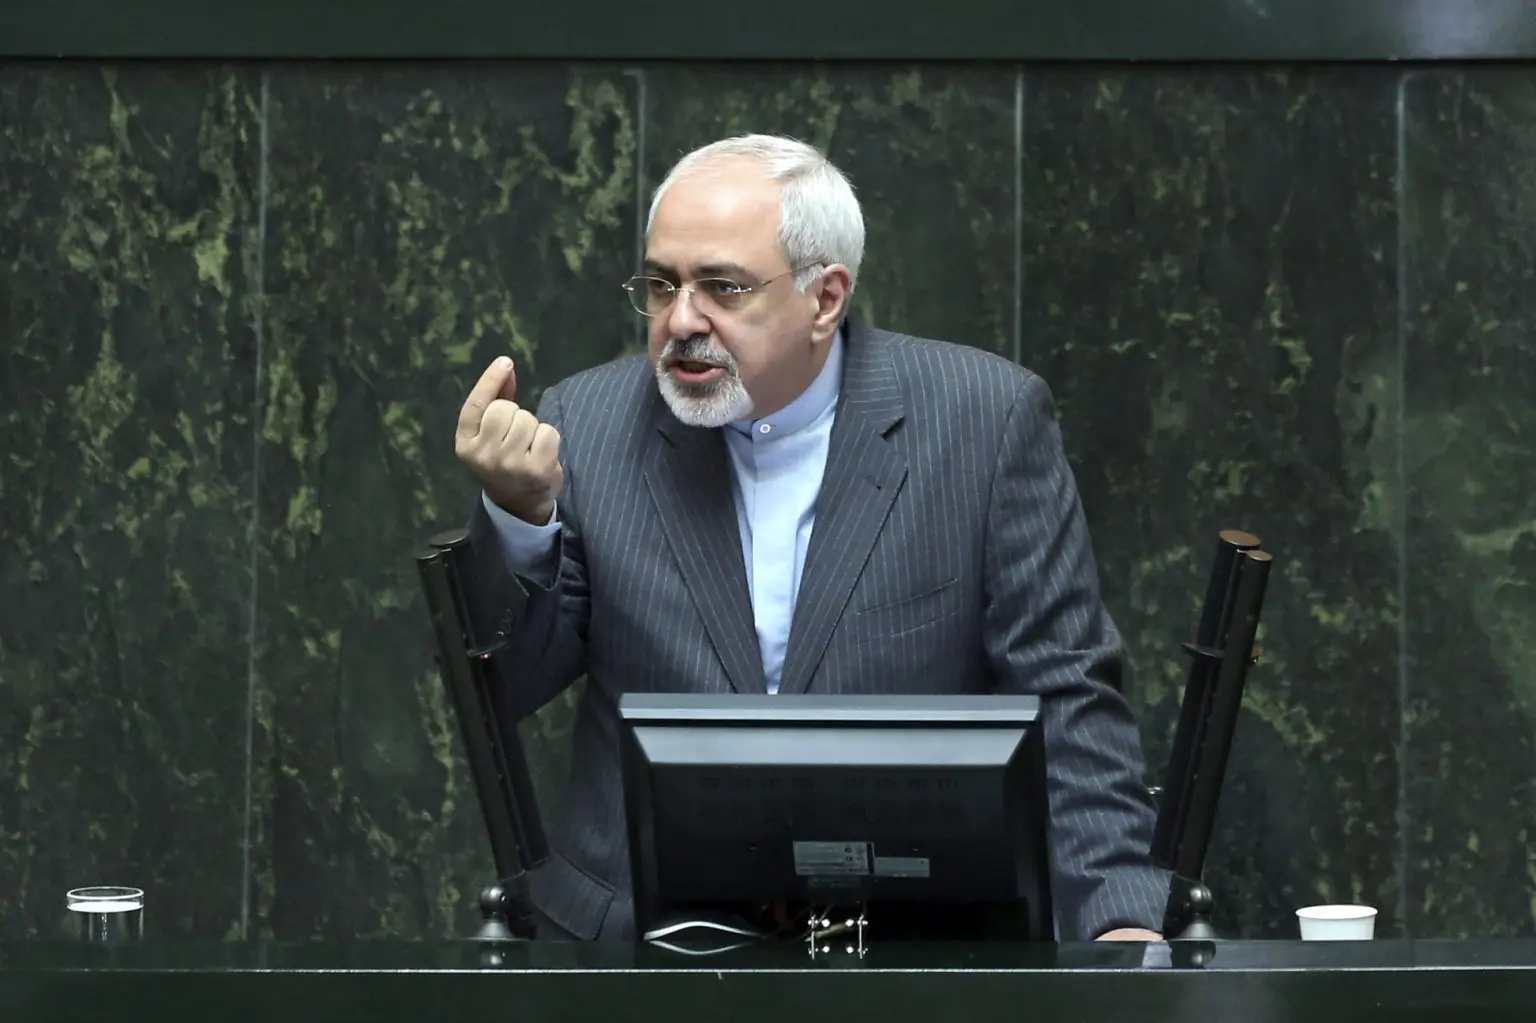 سوال از ظریف درباره سرنوشت اموال بلوکه شده ایران 